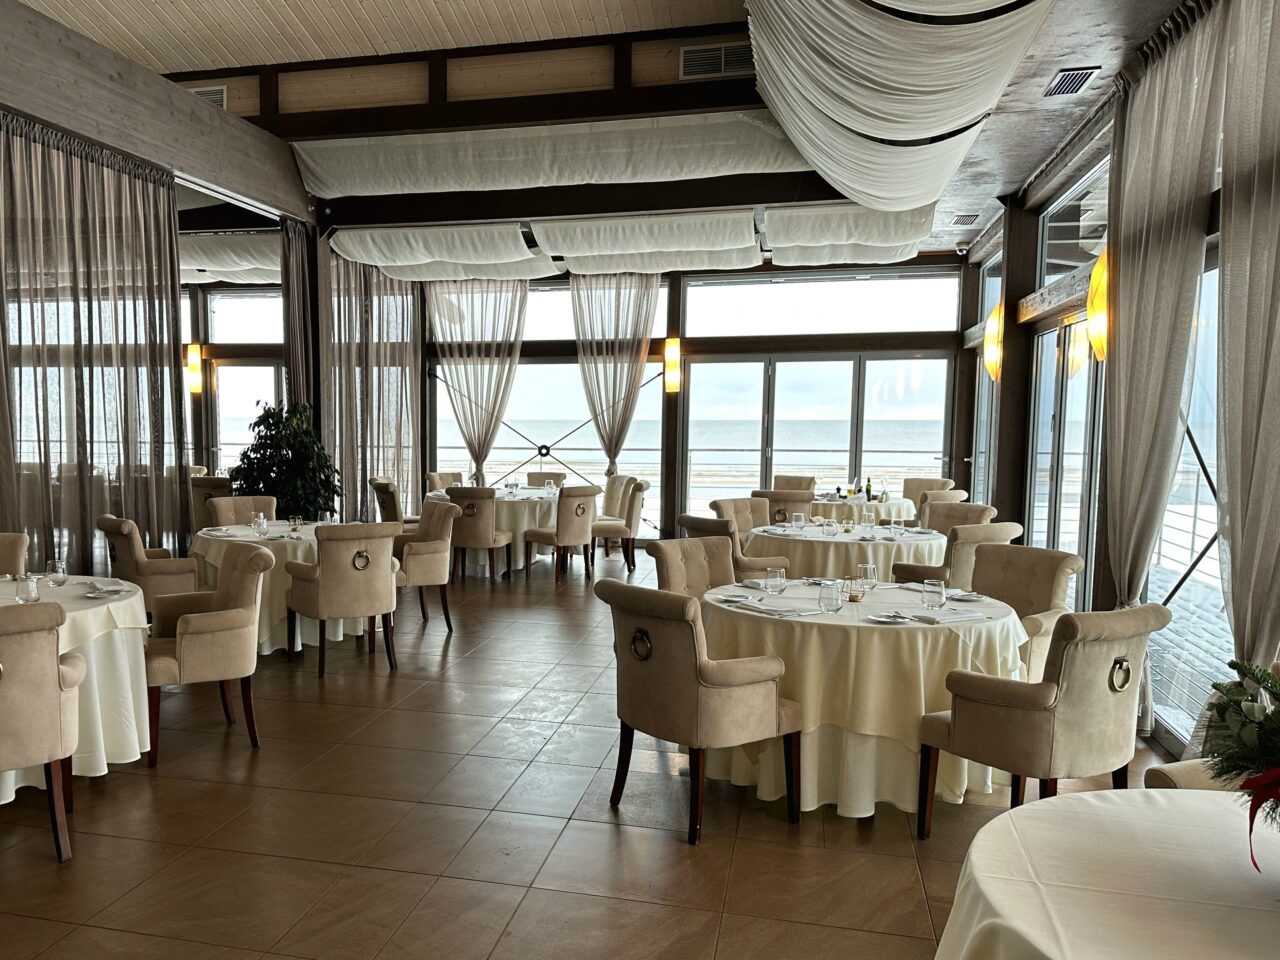 Restaurant med runde bord og utsikt mot sjøen. Foto